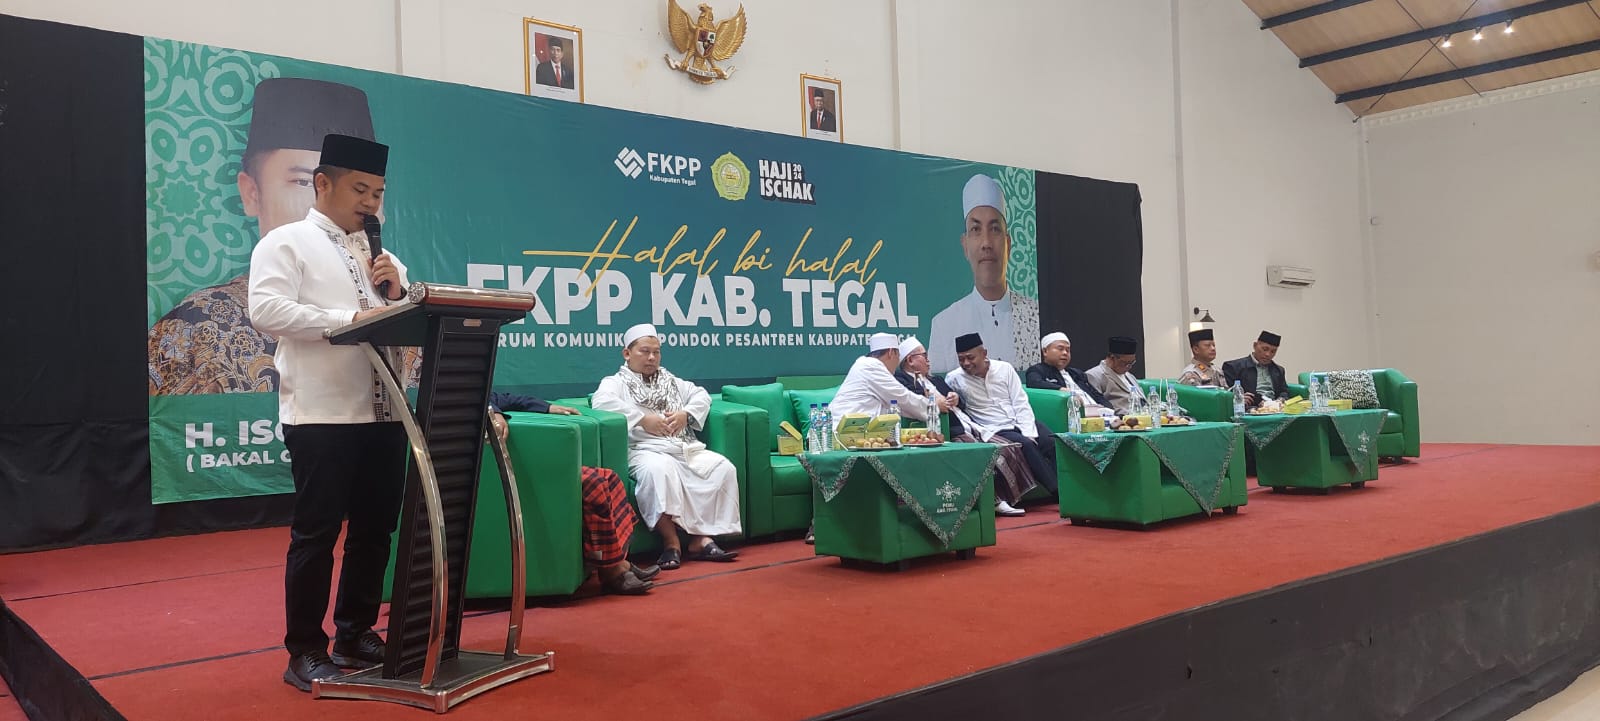 Bacabup H Ischak Maulana Berharap Ponpes di Kabupaten Tegal Menjadi Rujukan di Jawa Tengah